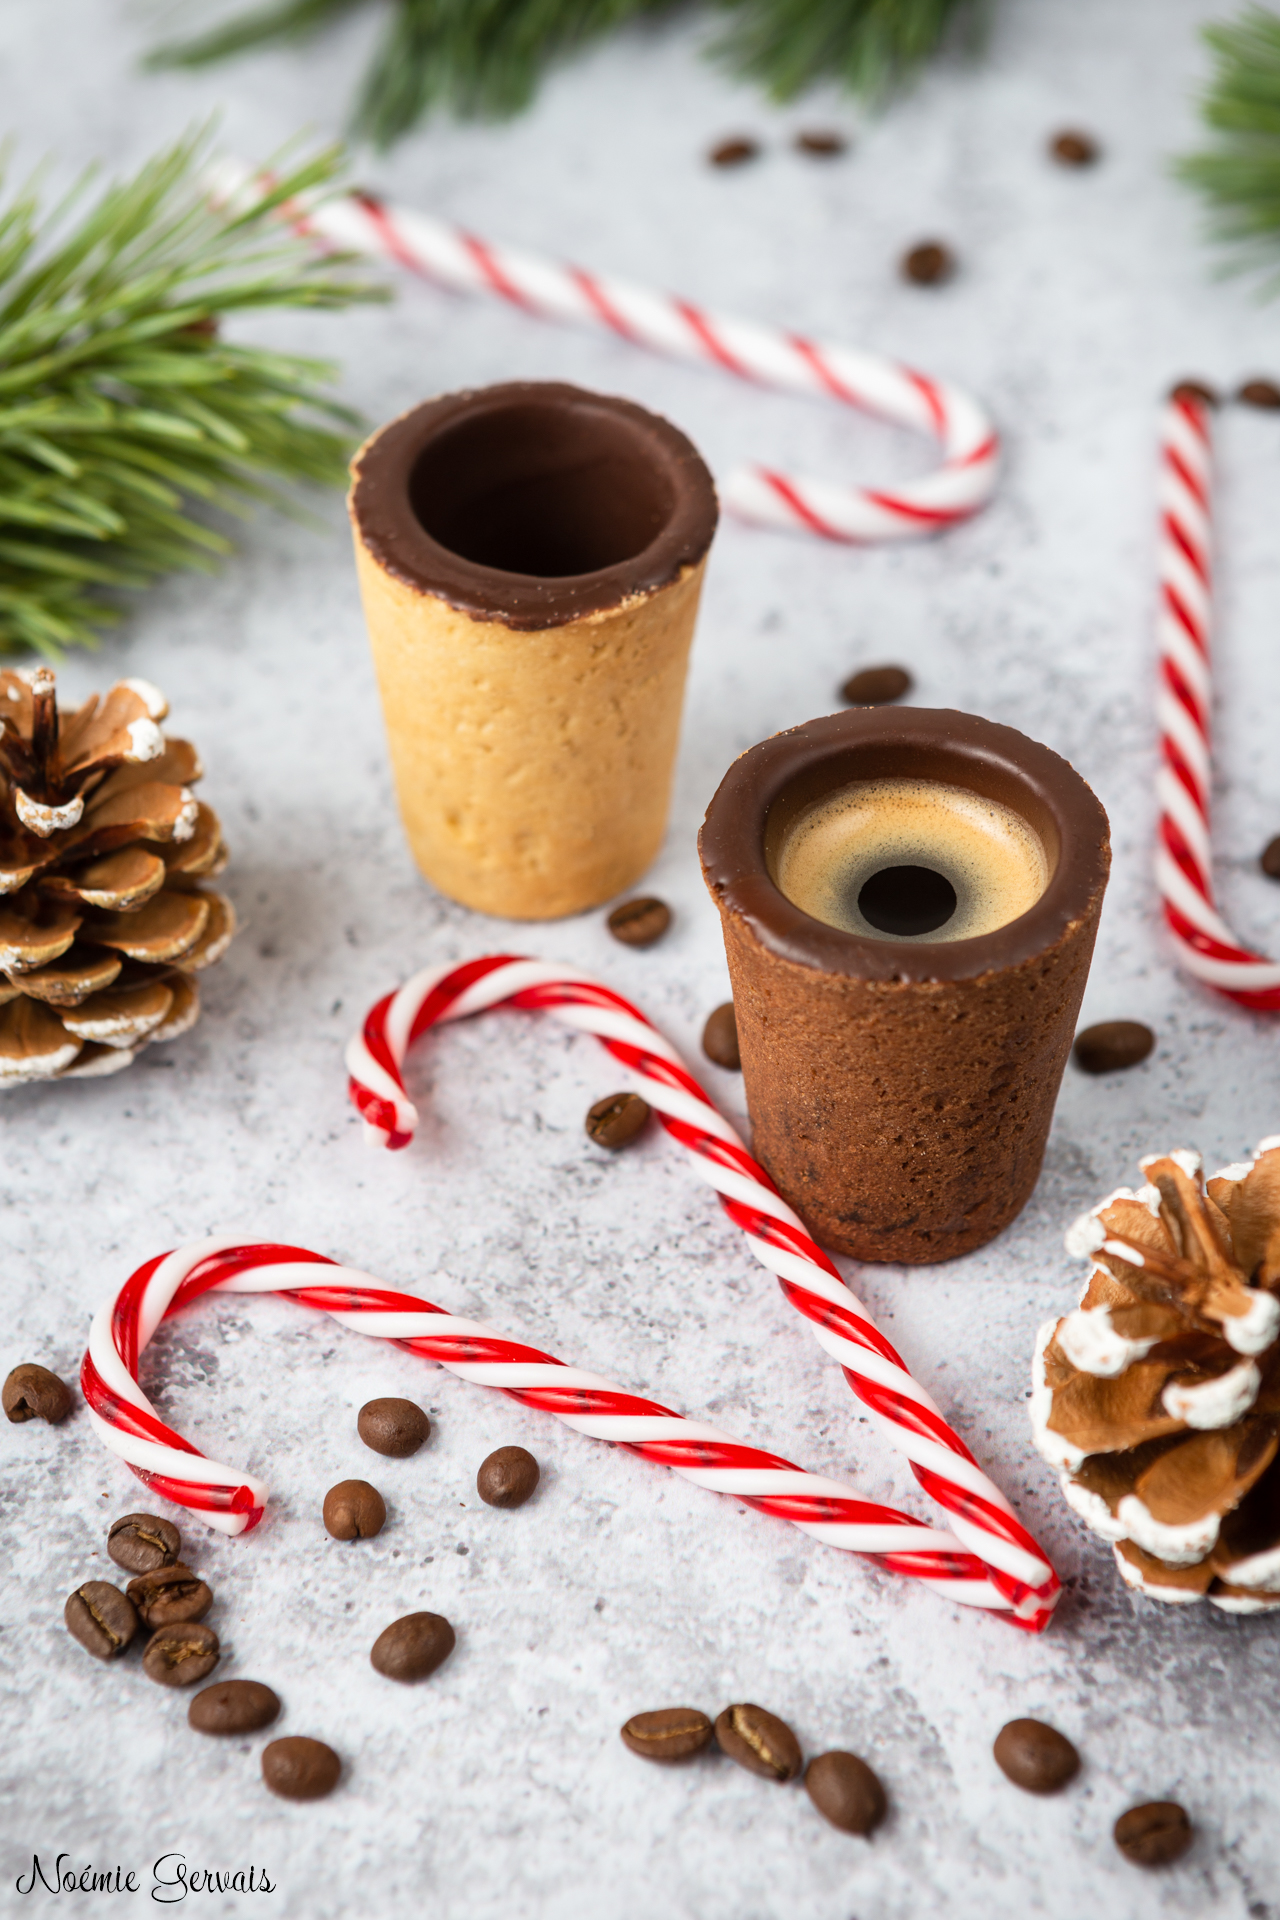 Tasses de café comestibles dans une ambiance de Noël